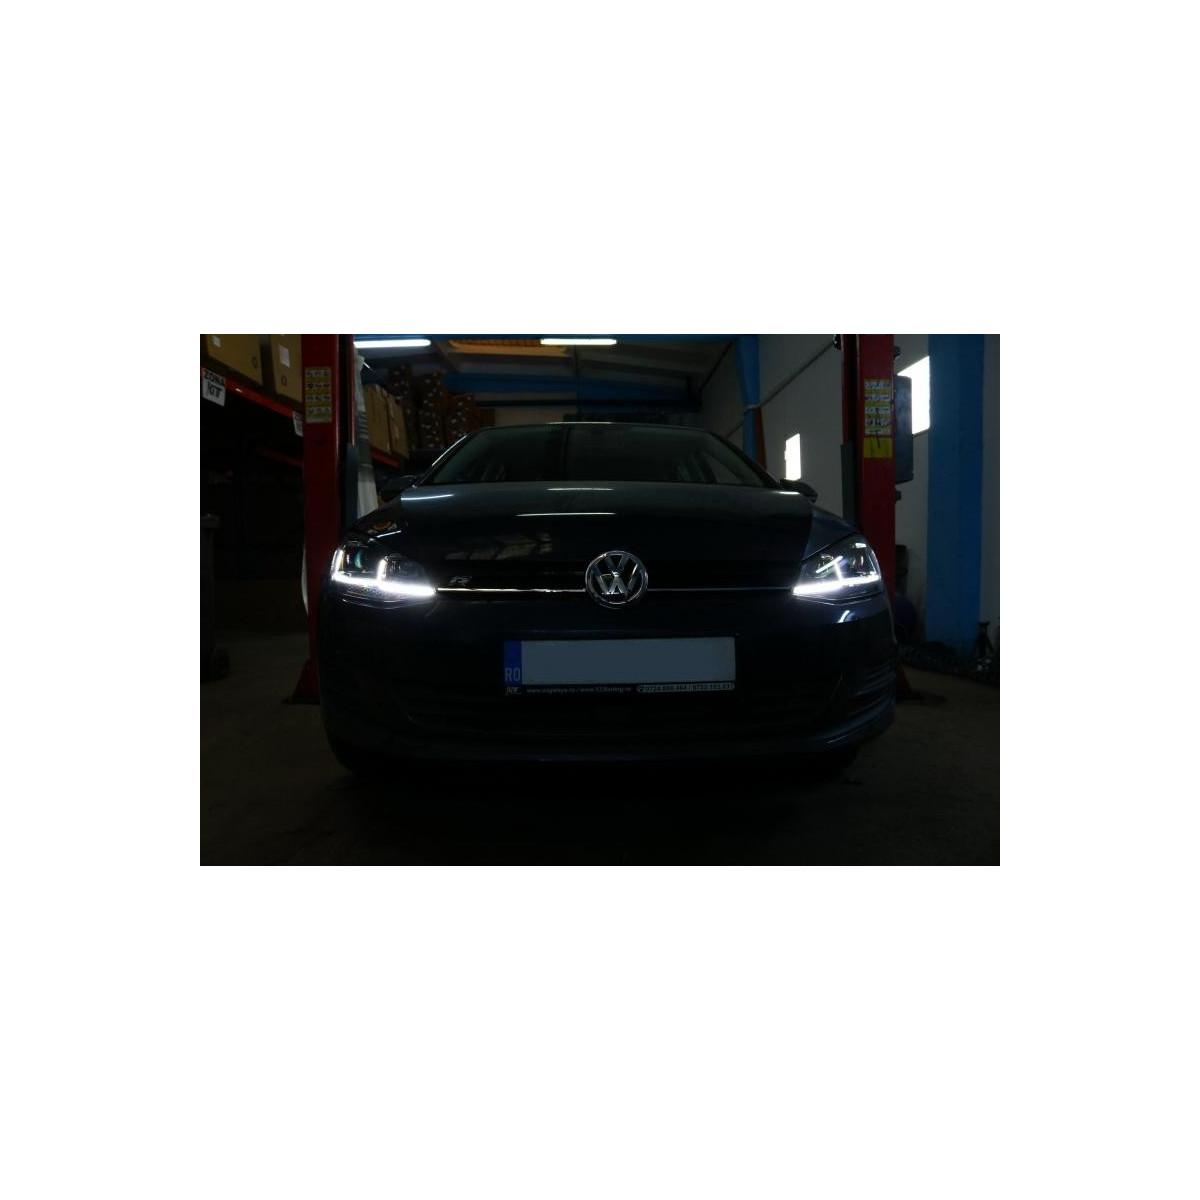 LAMPY PRZEDNIE VW GOLF 7 (2012-2017) R-LINE LED